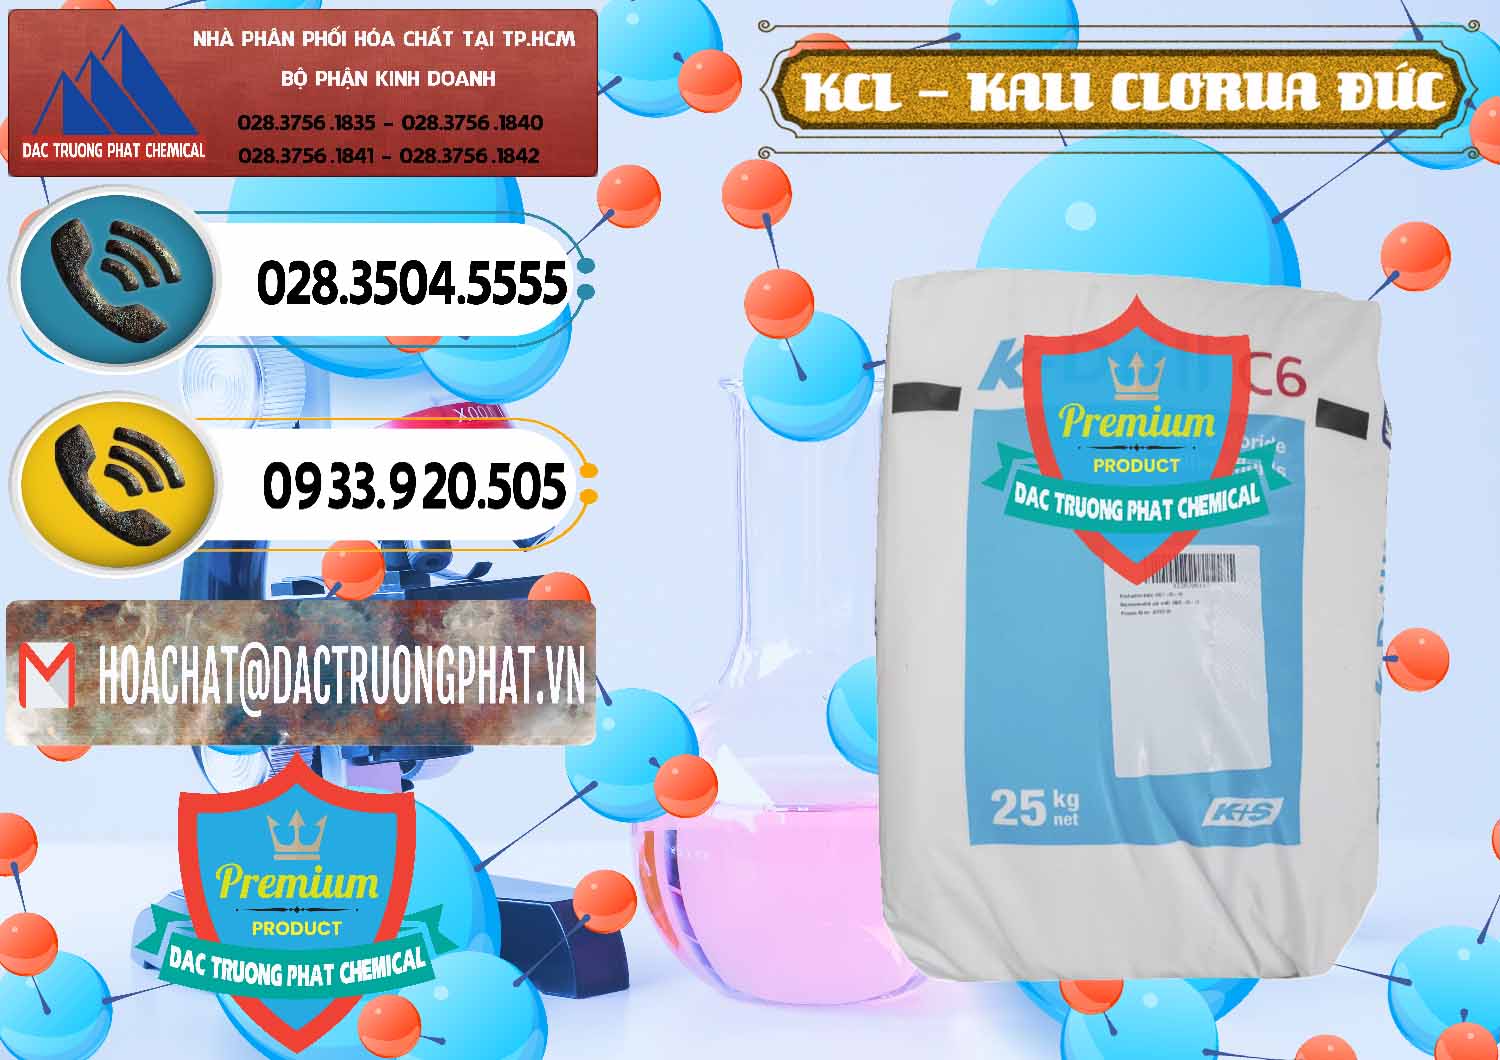 Nơi chuyên phân phối _ bán KCL – Kali Clorua Trắng K DRILL Đức Germany - 0428 - Nơi chuyên bán và phân phối hóa chất tại TP.HCM - hoachatdetnhuom.vn